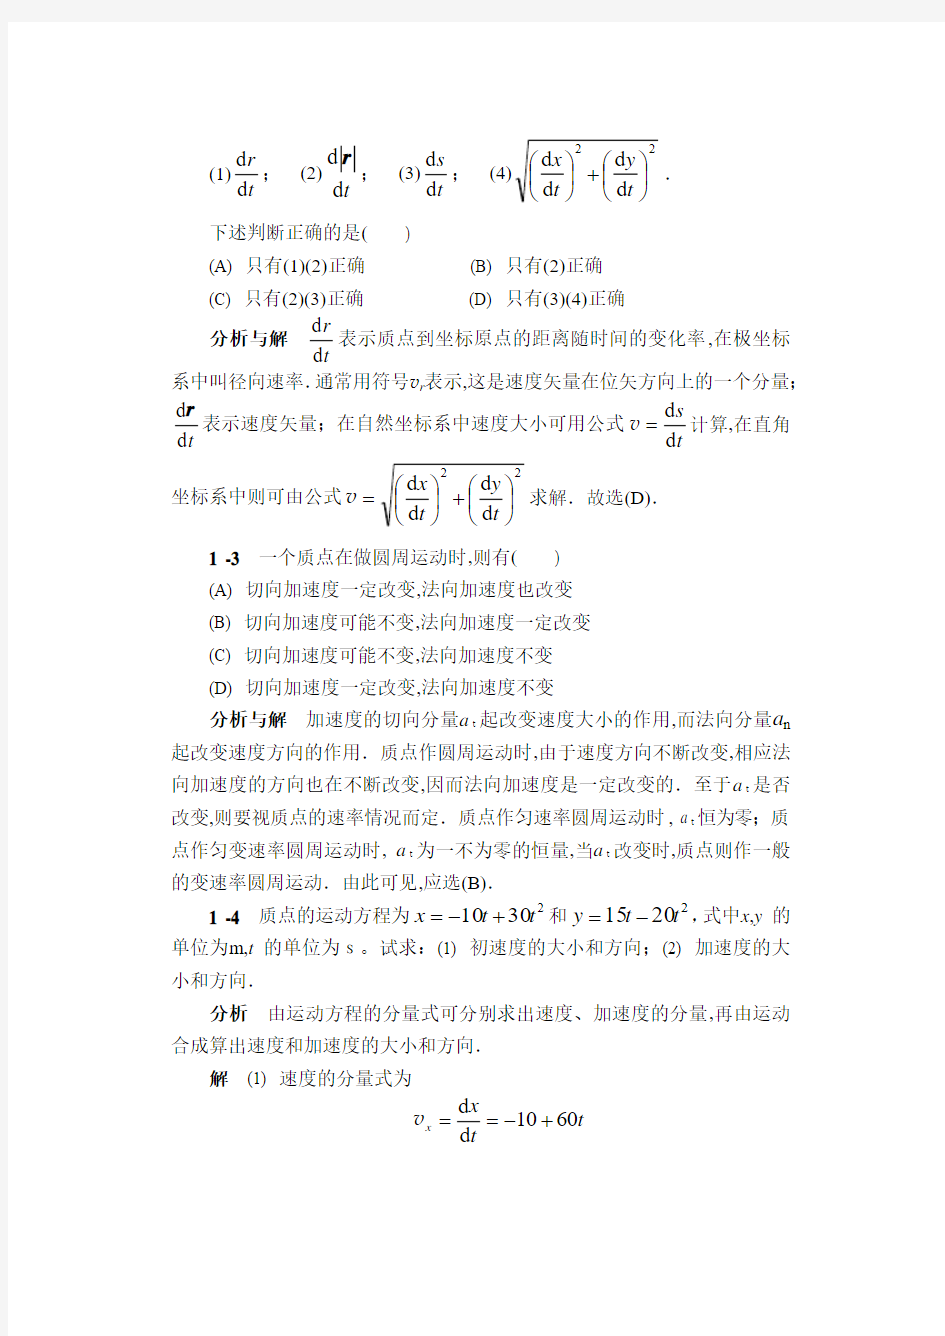 华南农业大学-物理学简明教程课后习题答案